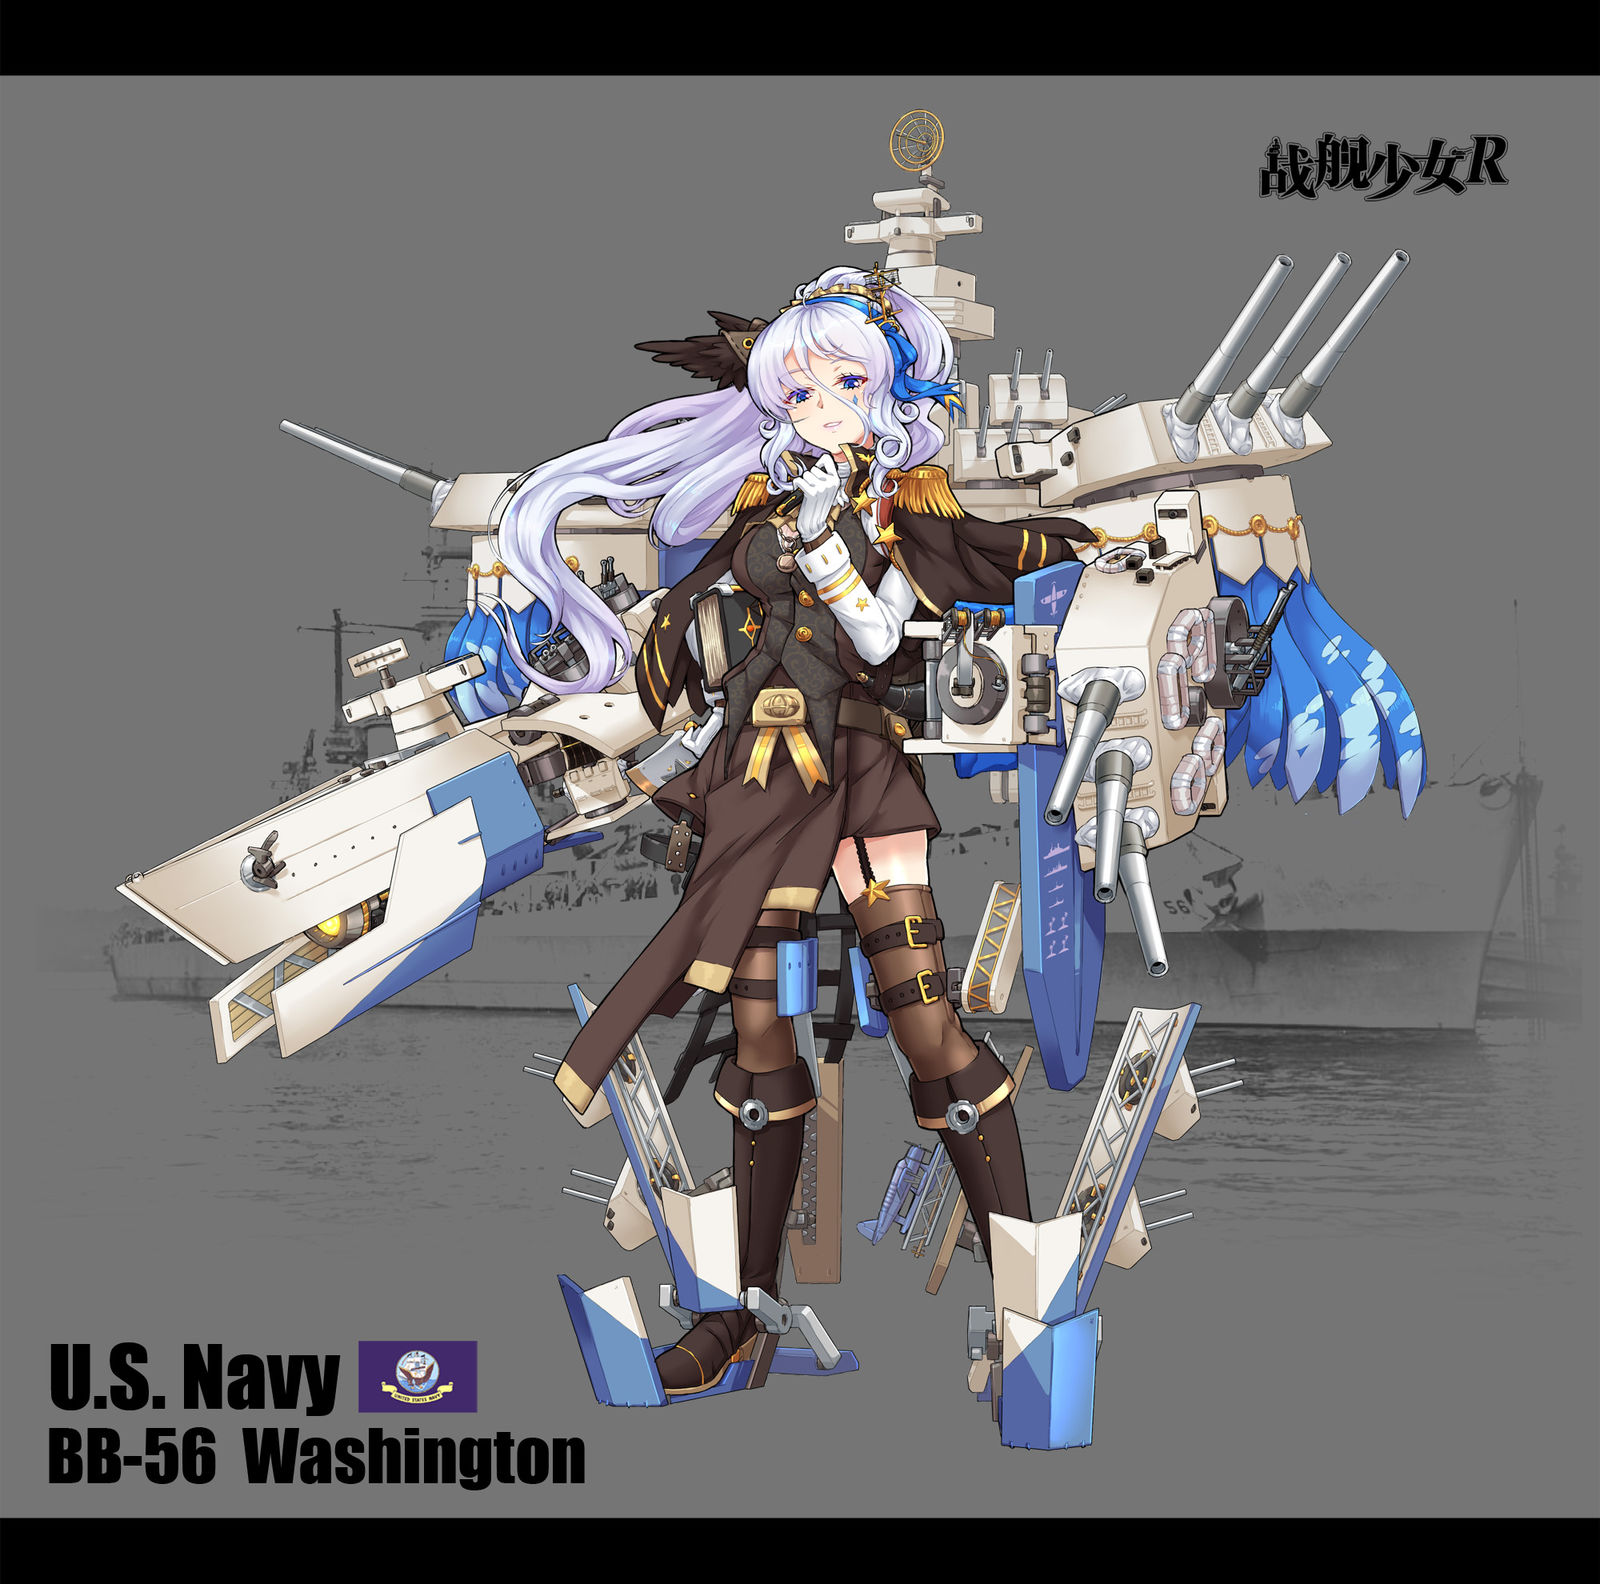 Washington KAI-原创战舰少女